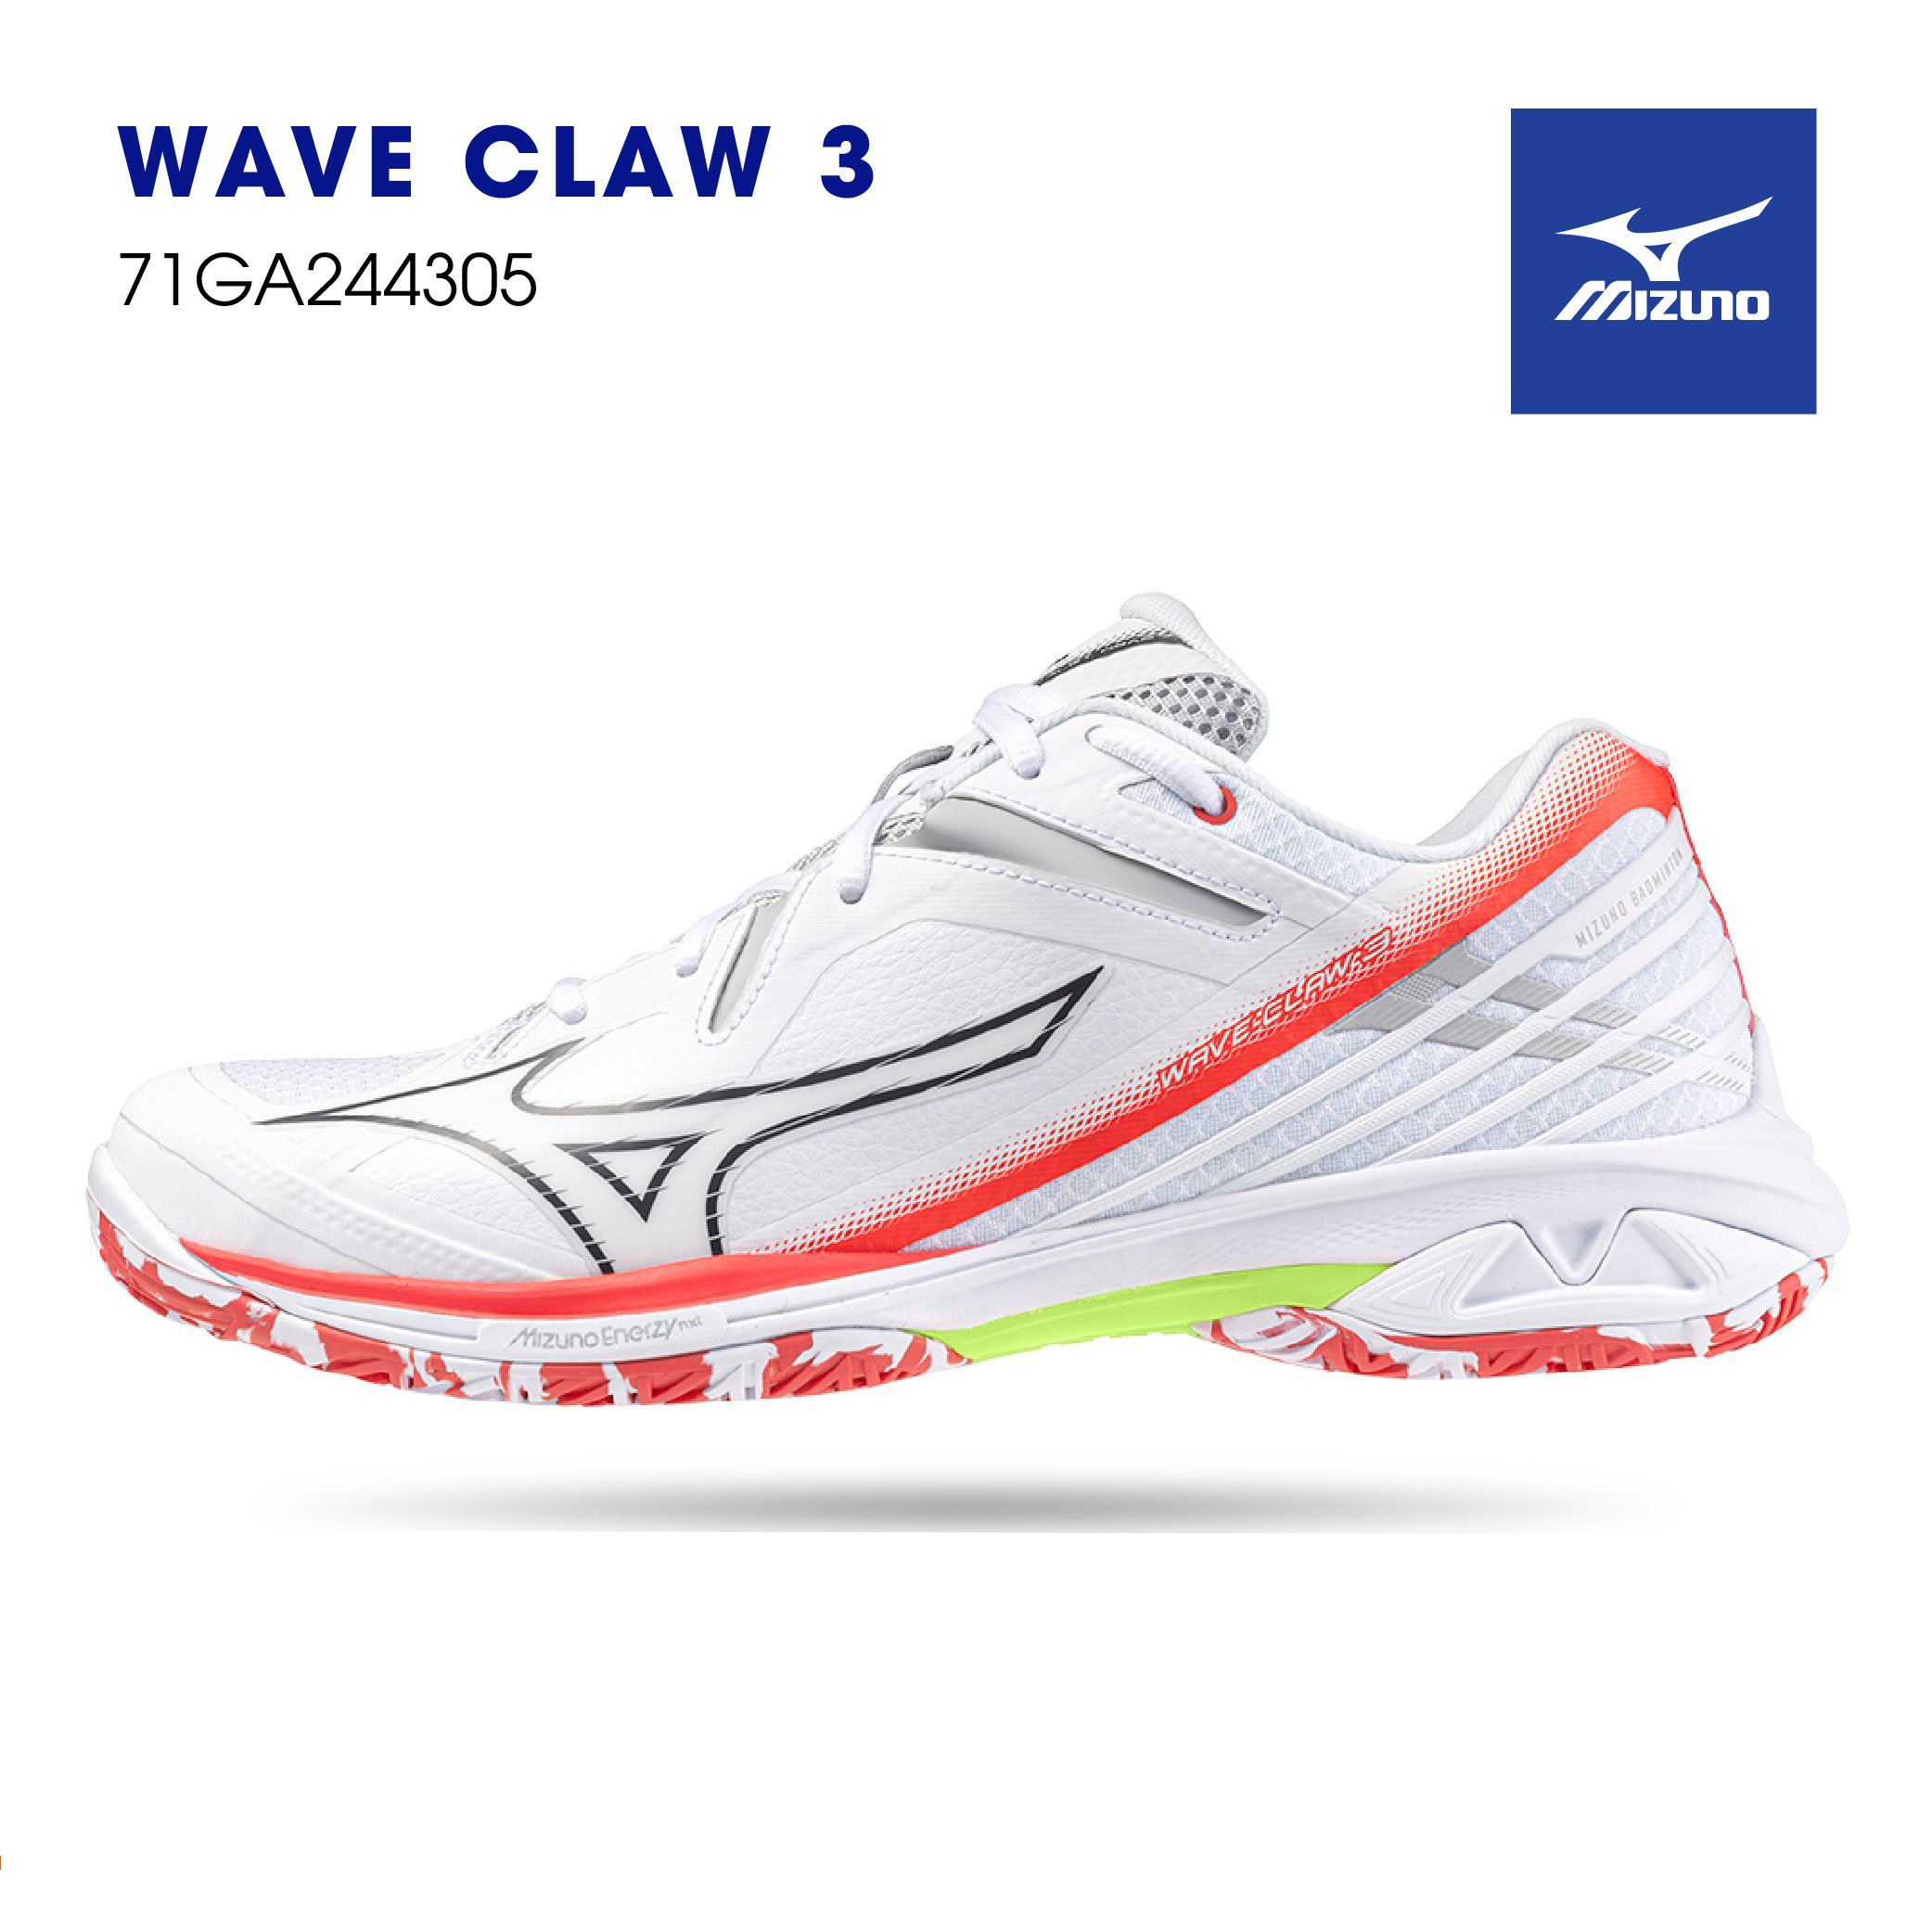 Giày cầu lông Mizuno WAVE CLAW 3 chính hãng bảo hành 12 tháng dành cho nam